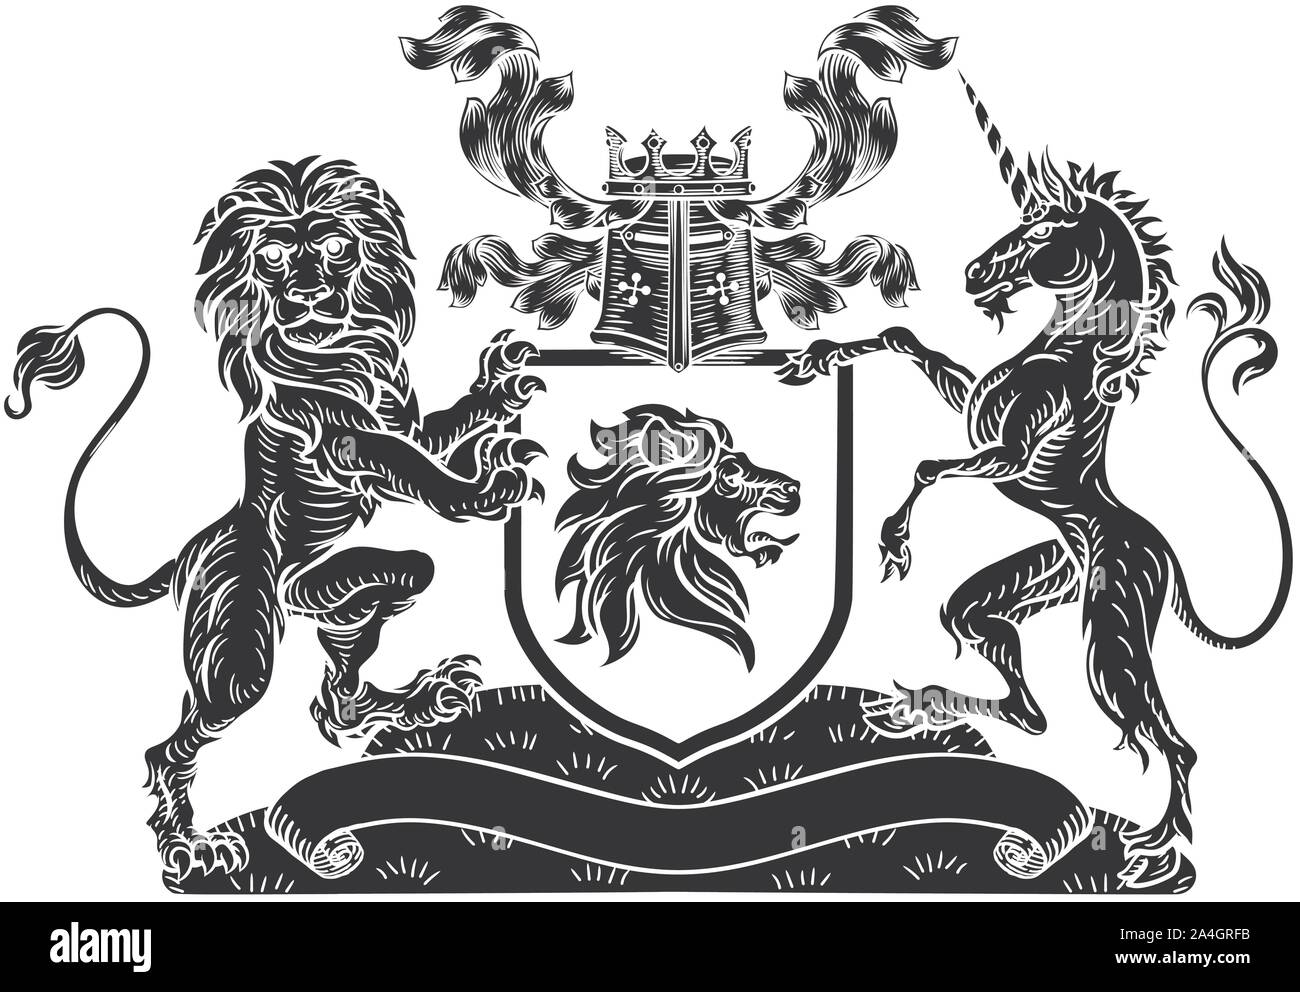 Crest Lion Einhorn heraldischen Schild Wappen Stock Vektor